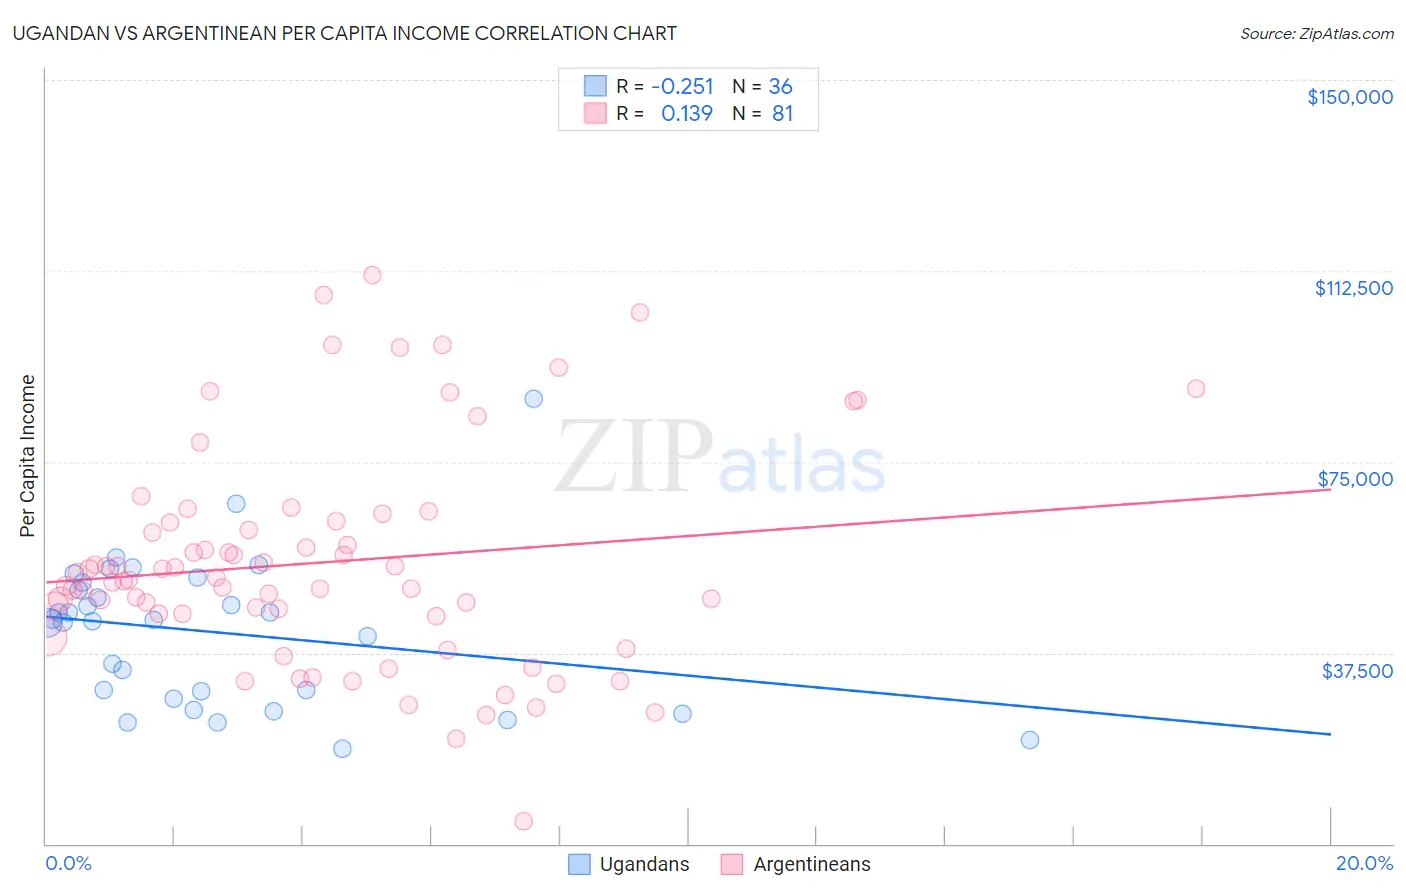 Ugandan vs Argentinean Per Capita Income